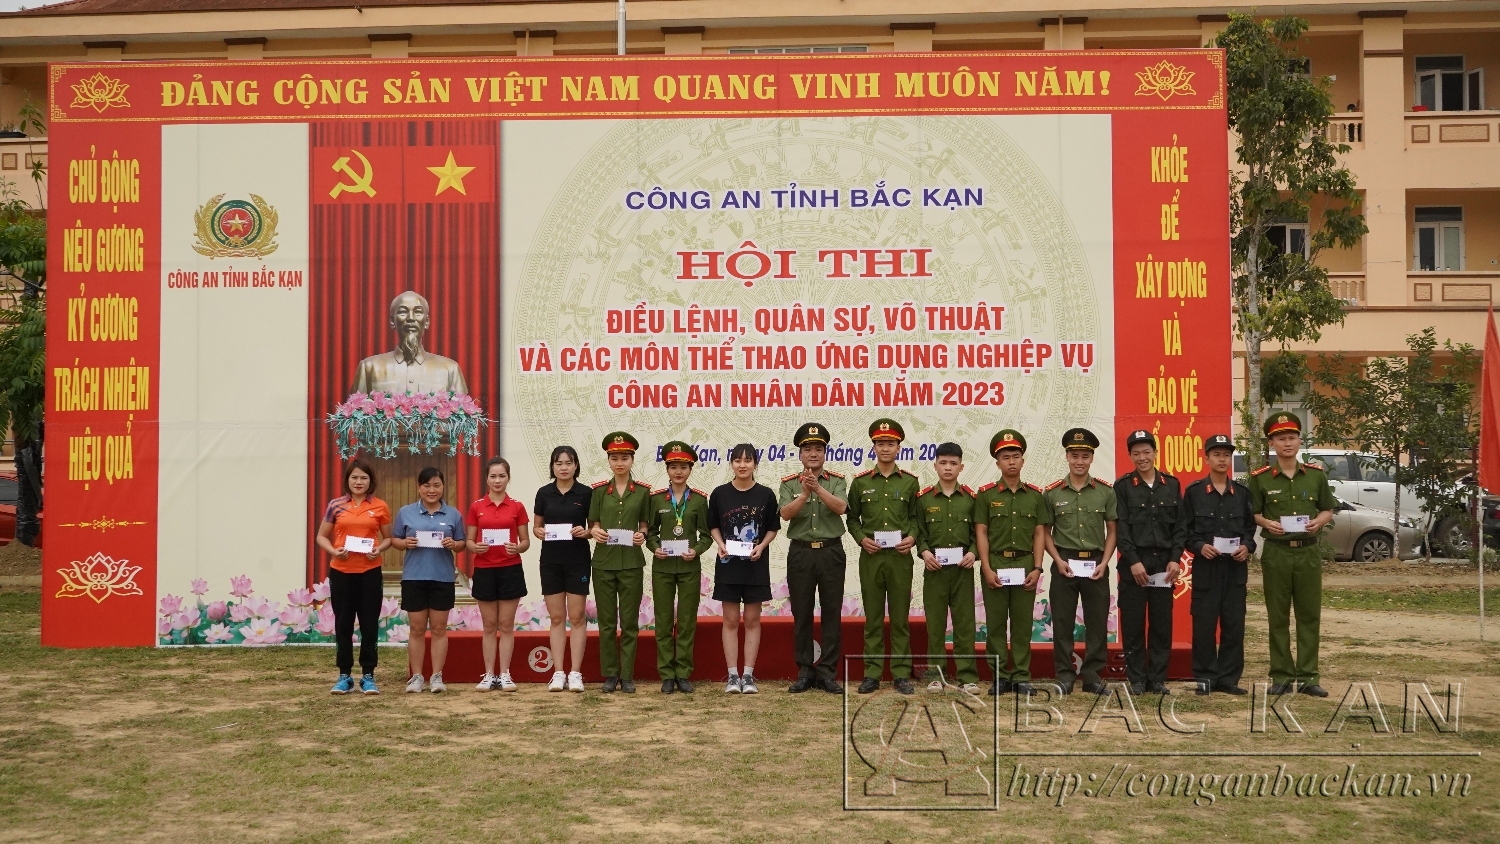 Thượng tá Đào Trọng Trang – Phó Trưởng Ban tổ chức Hội thi trao giải khuyến khích cho các vận động viên tham gia tranh tài ở nội dung Chạy vũ trang việt dã